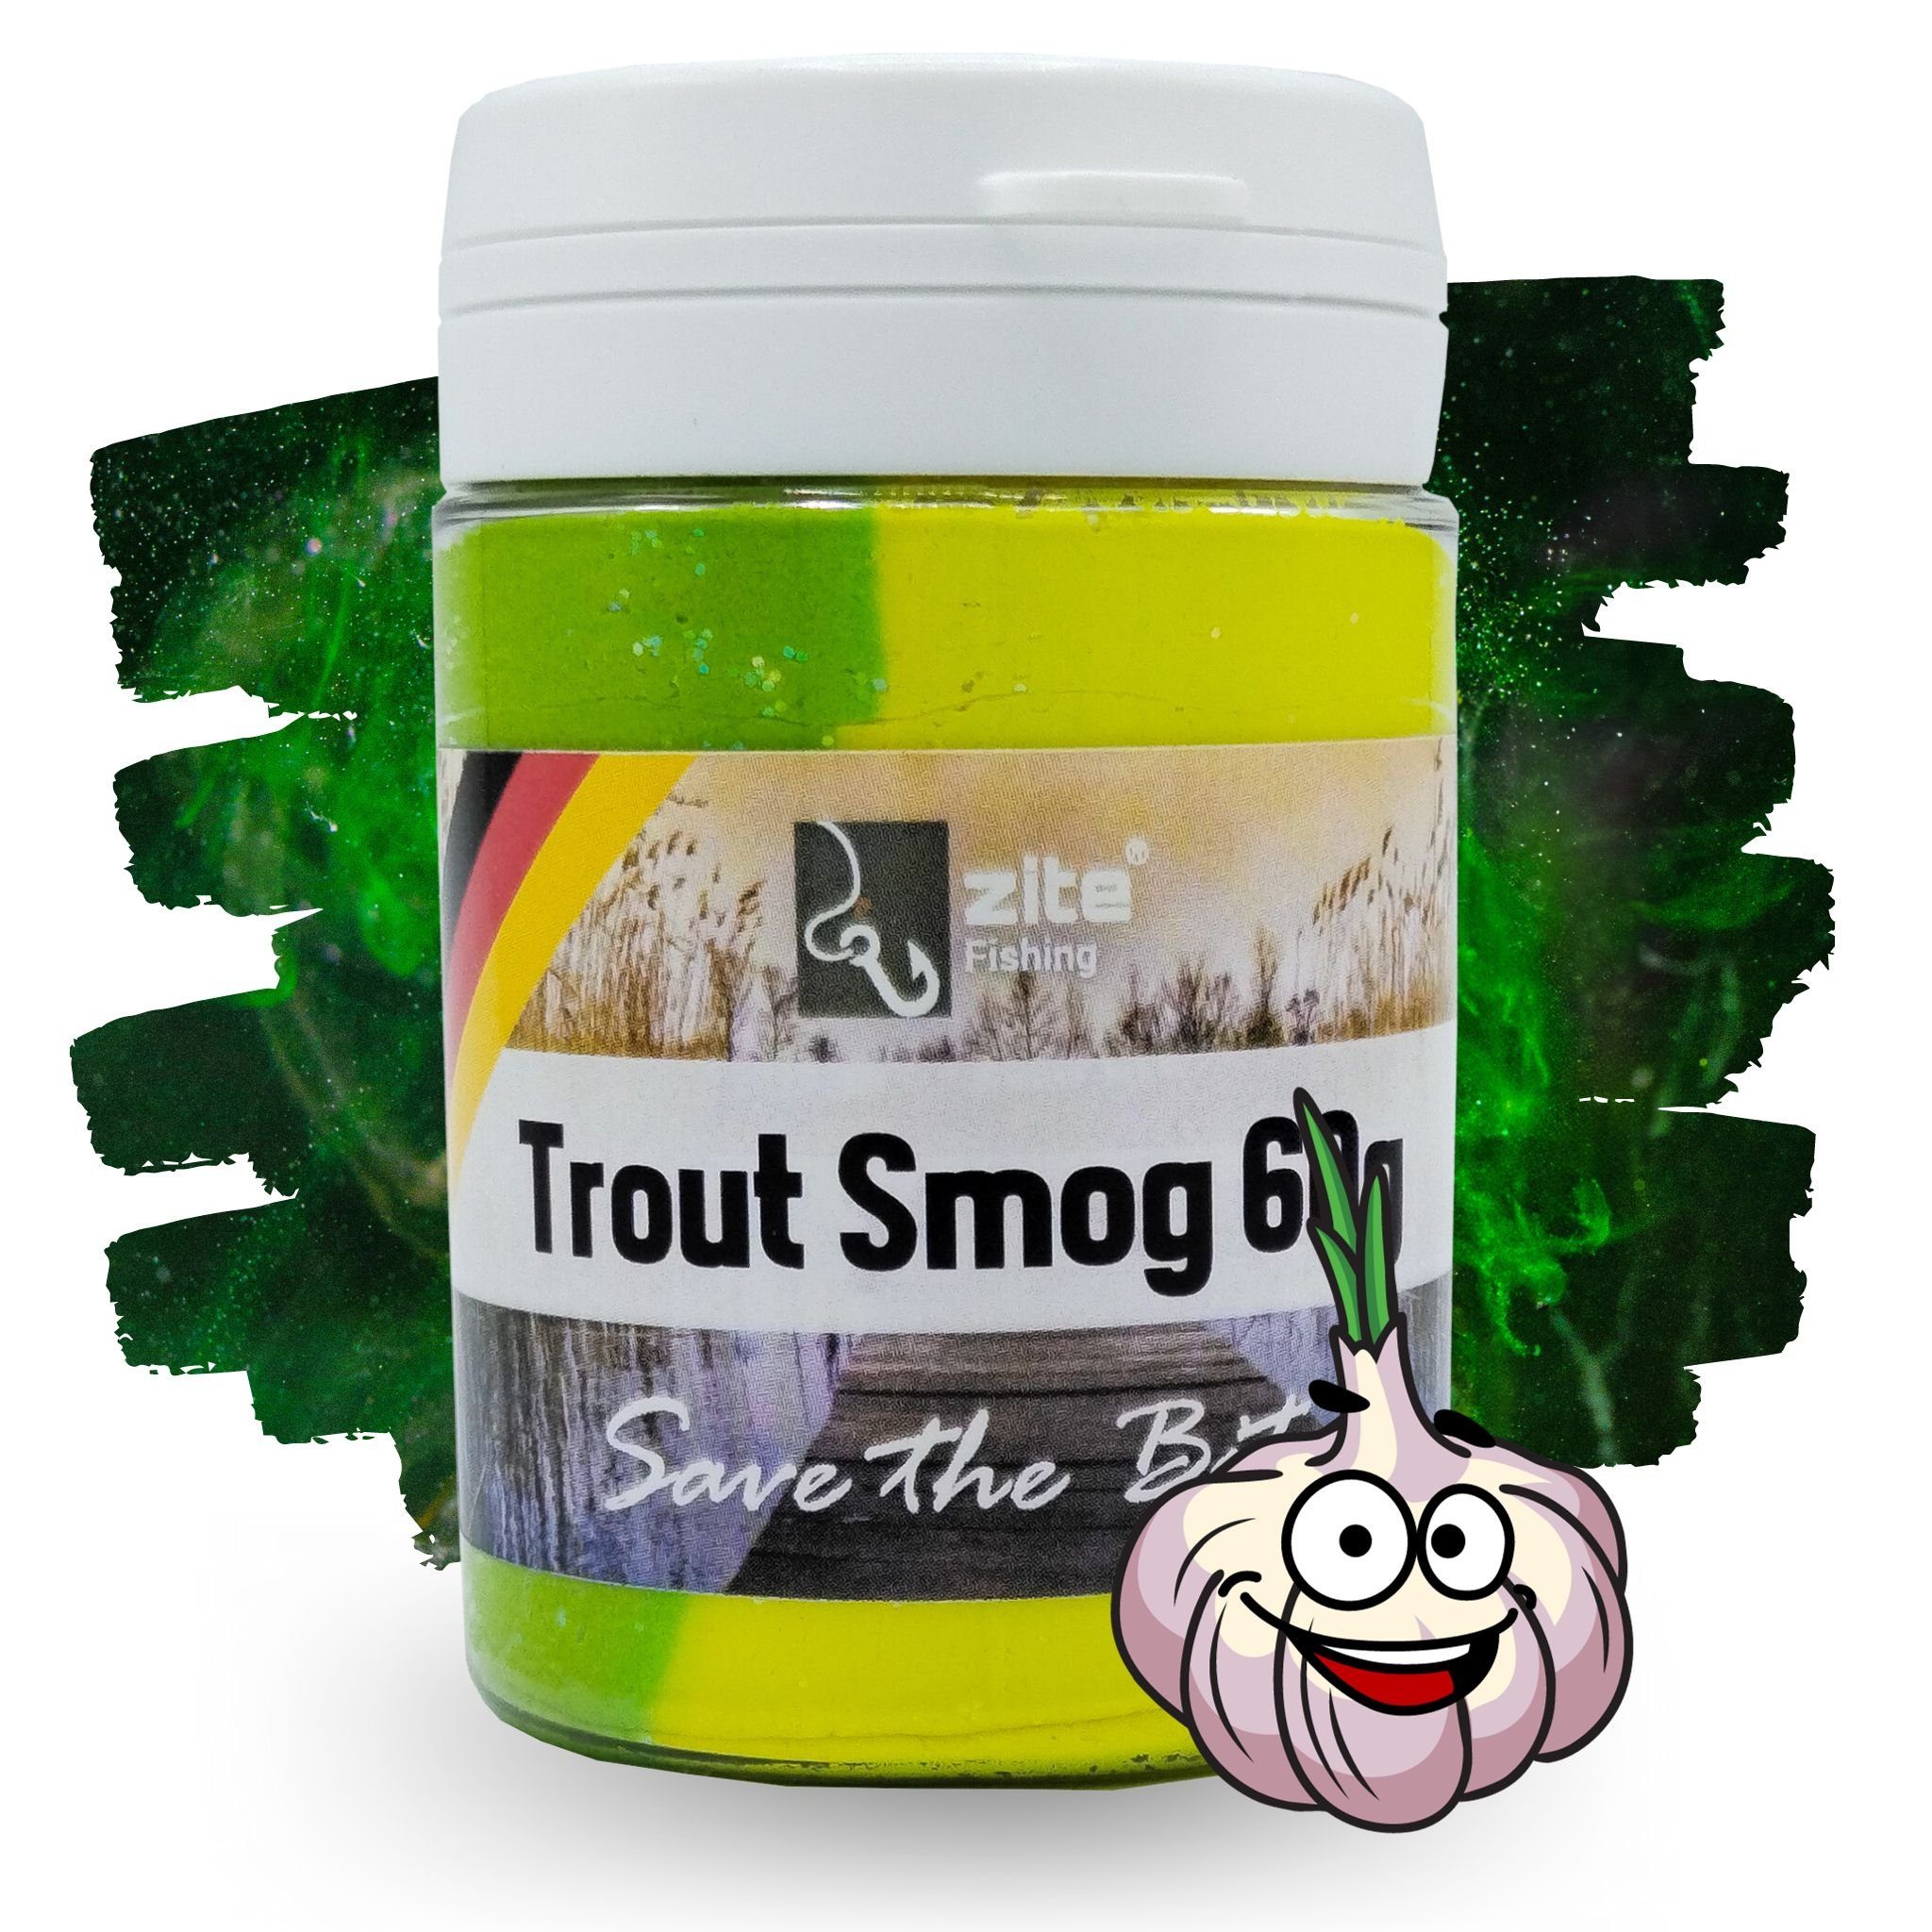 Zite Kunstköder Trout Smog 60g Knoblauch-Aroma - Forellenteig mit Farb- & Duft-Wolke Gelb/Grün